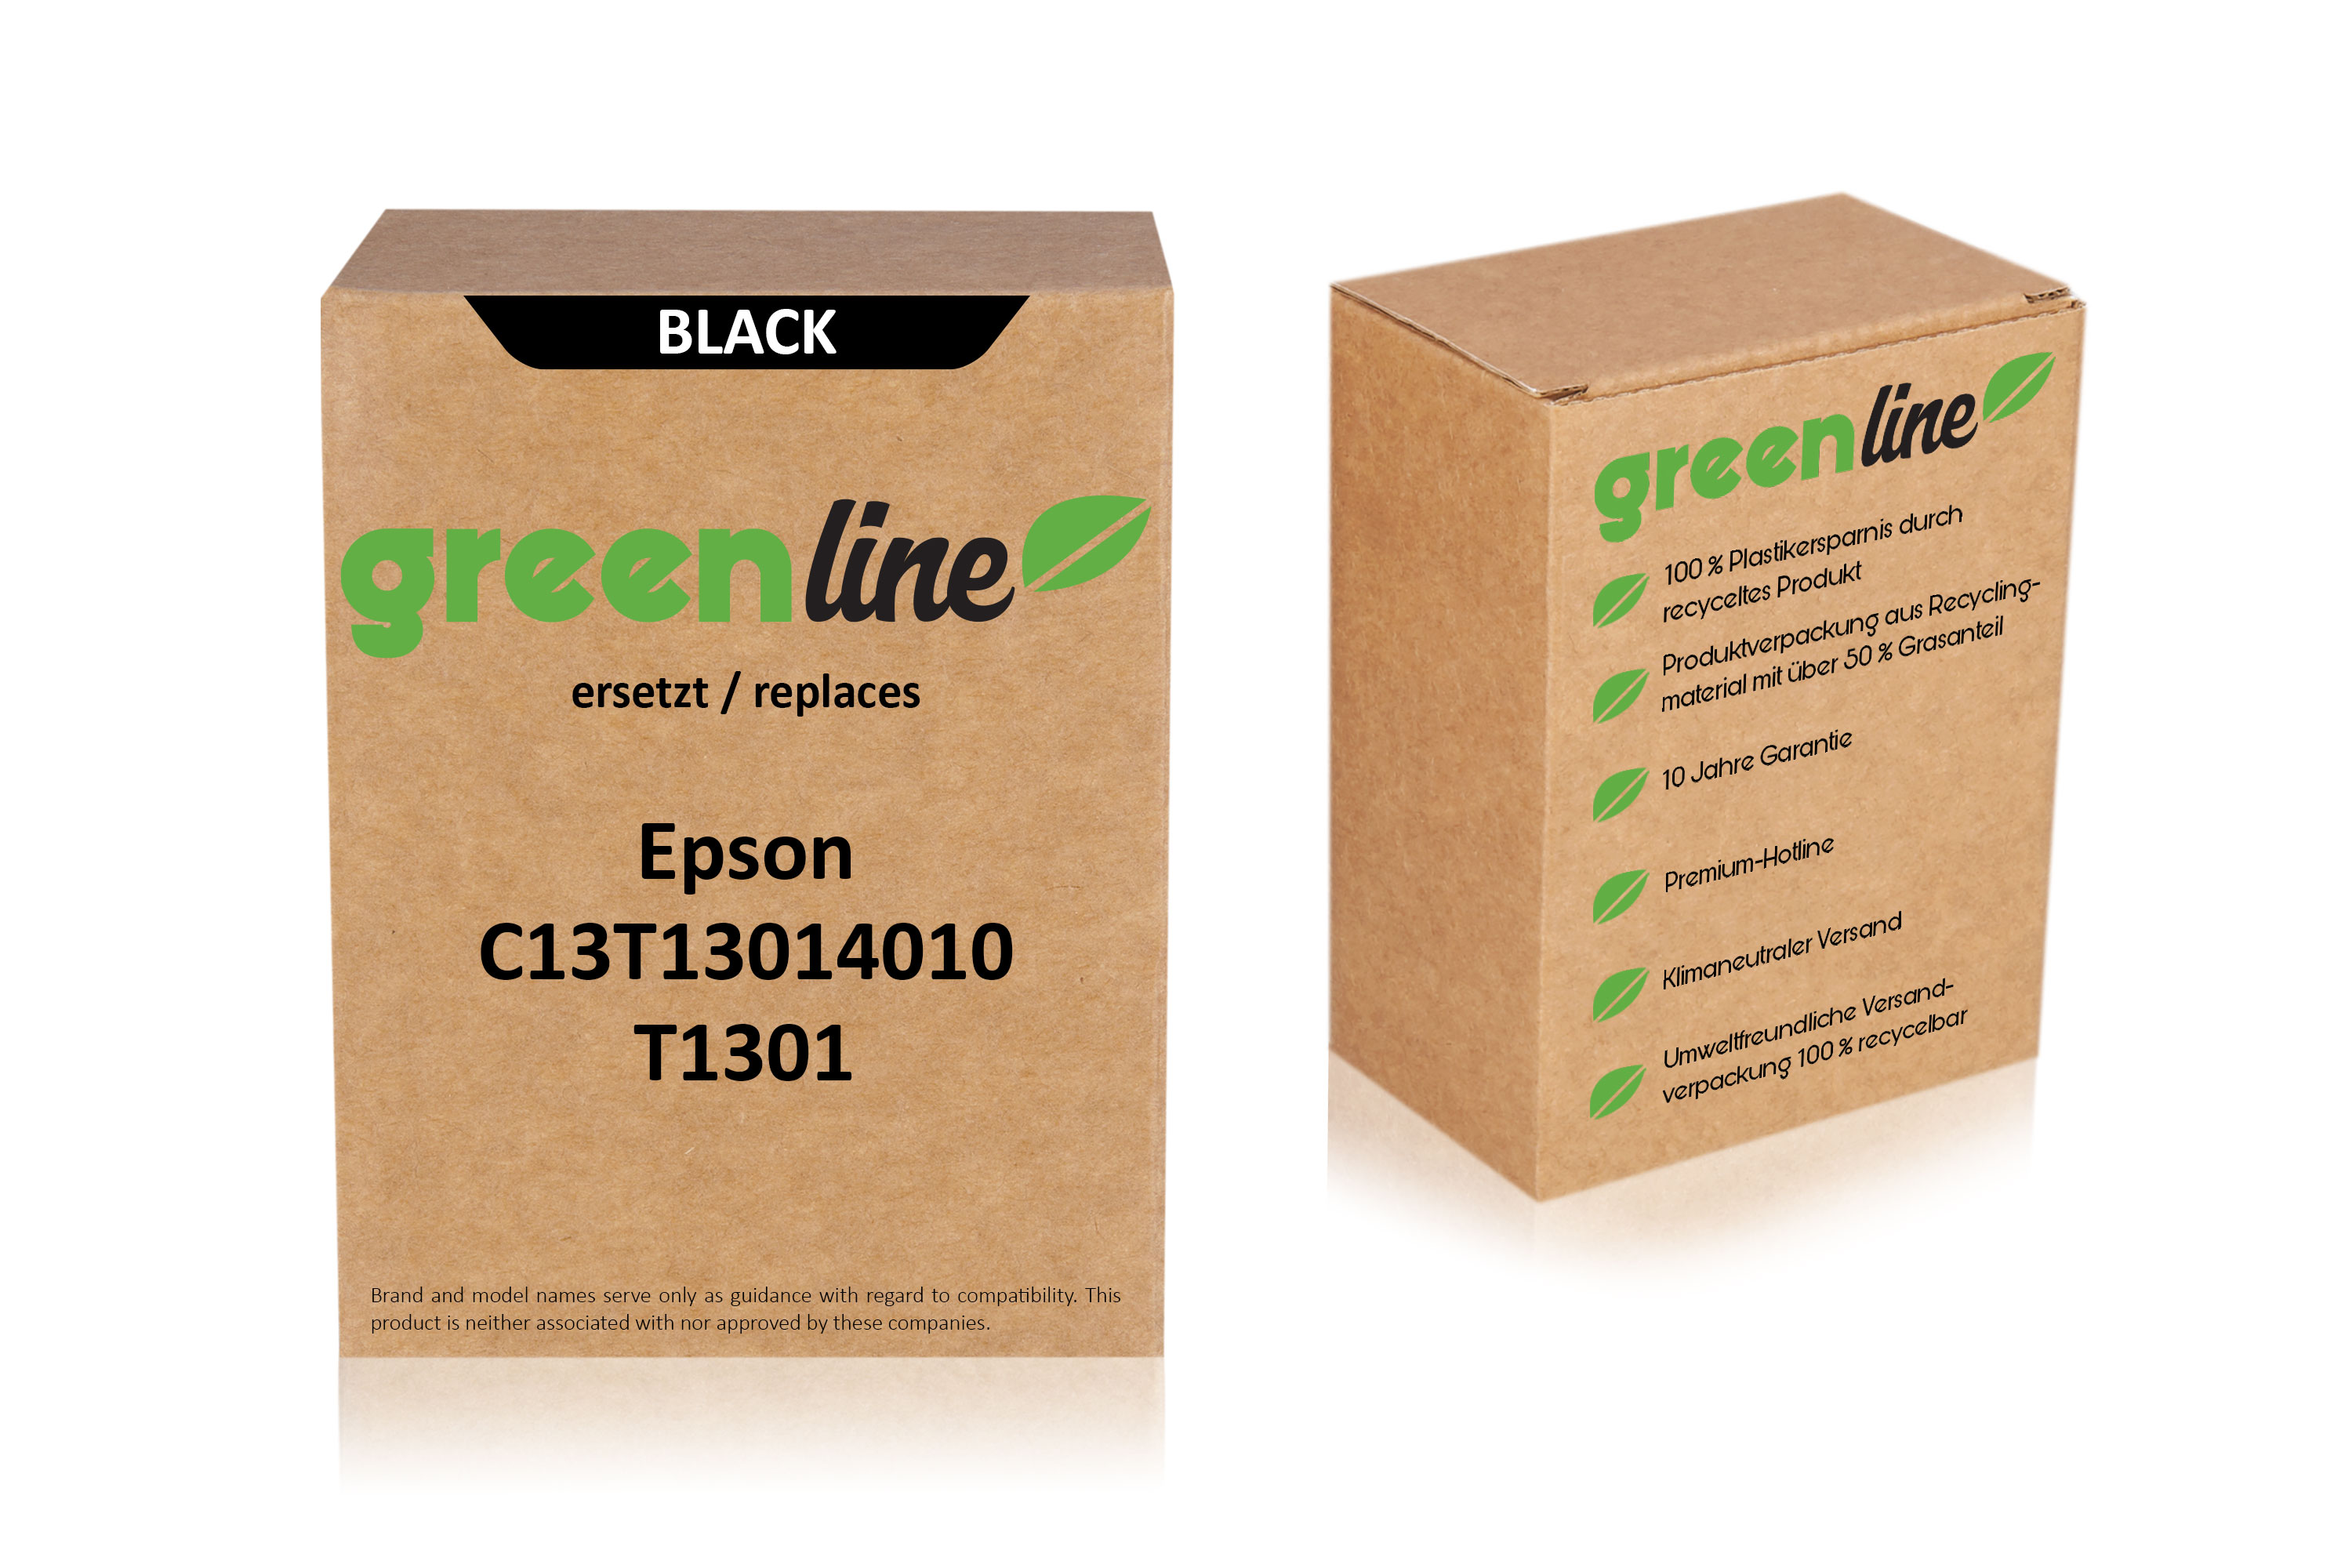 greenline ersetzt Epson C 13 T 13014010 / T1301 Tintenpatrone, schwarz